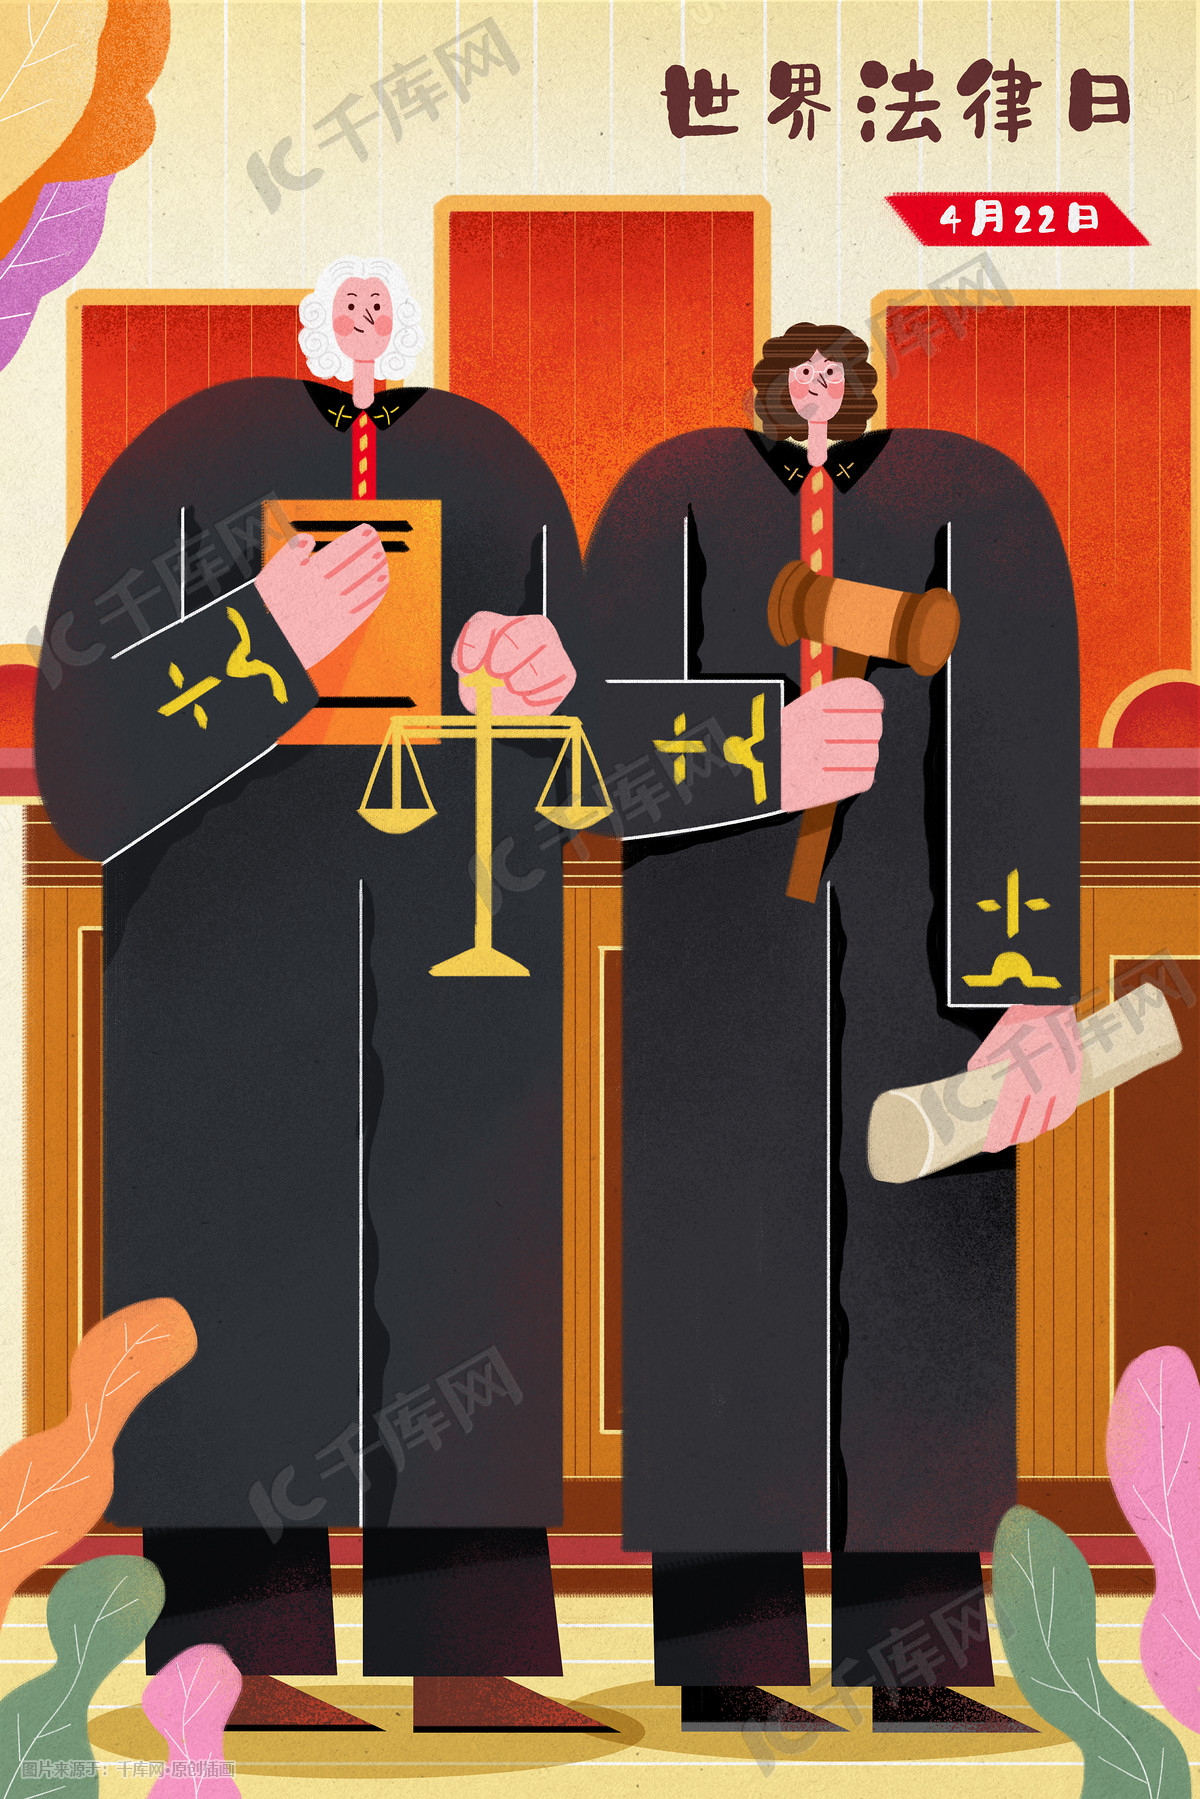 女法官矢量图动画插图 向量例证. 插画 包括有 法官, 图画, 图象, 投反对票, 律师, 女性, 可笑 - 218424644